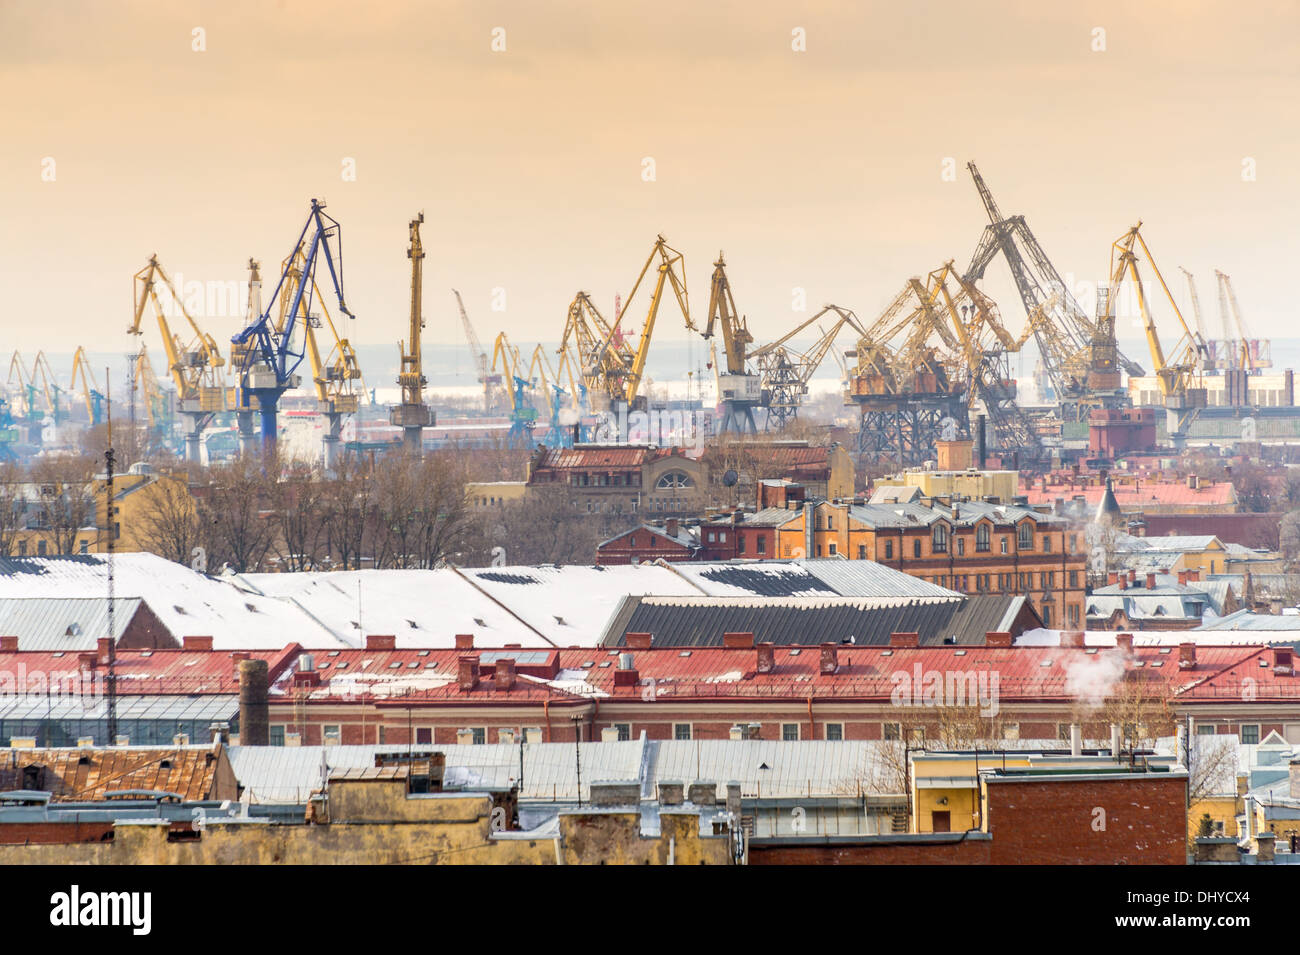 Vue aérienne de Saint-Pétersbourg à partir de la Cathédrale Saint Isaac avec grues portuaires. Banque D'Images